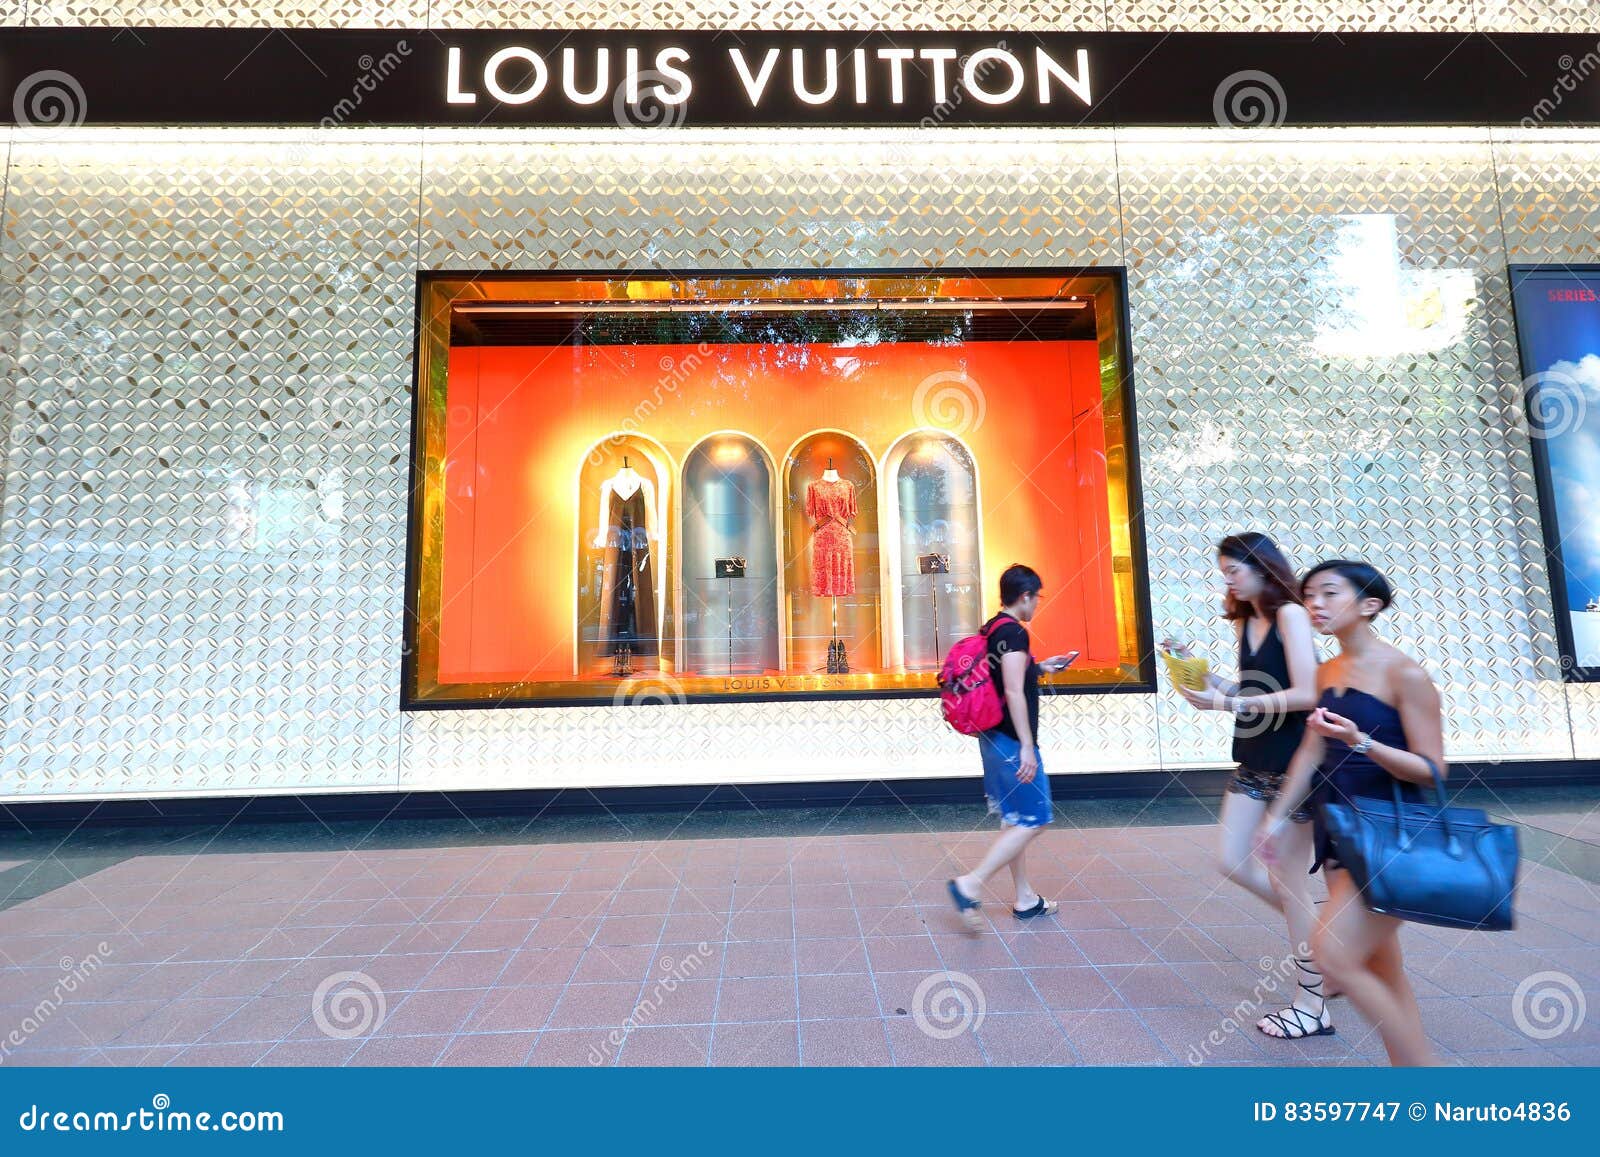 176 Singapore Louis Vuitton Shop Night Images, Stock Photos & Vectors